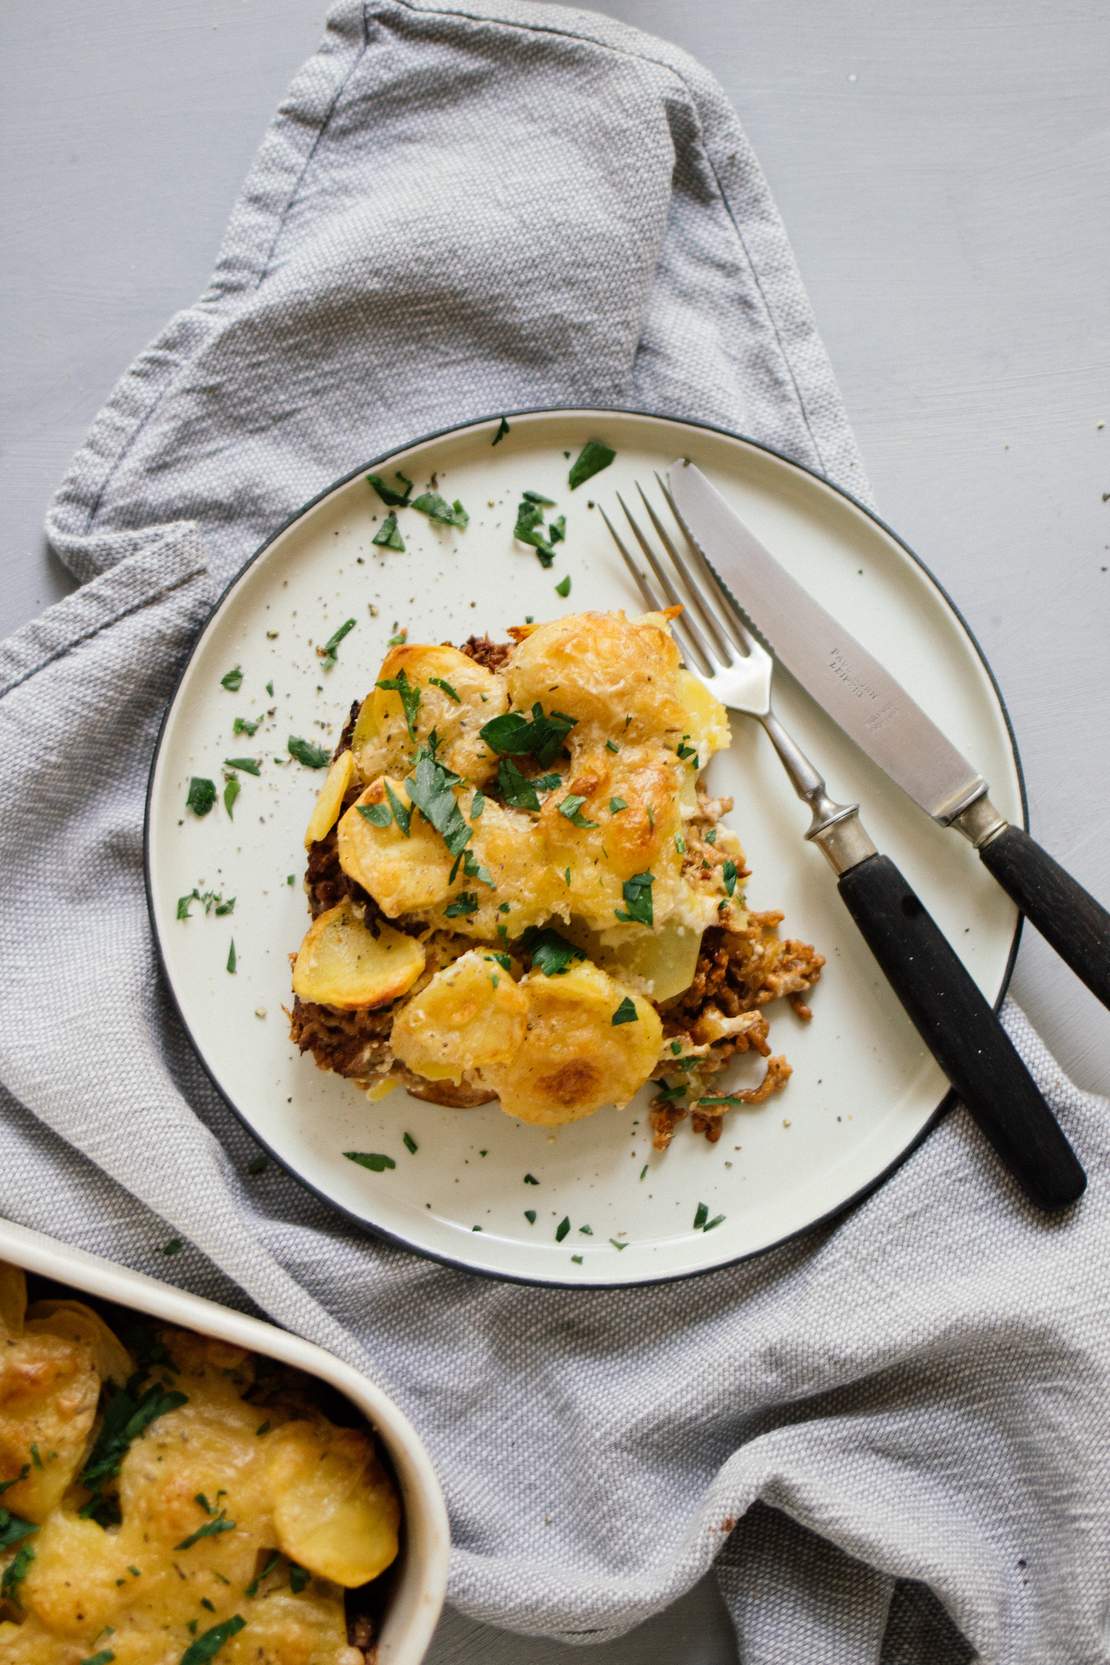 R451 Vegan potato casserole with “minced meat“